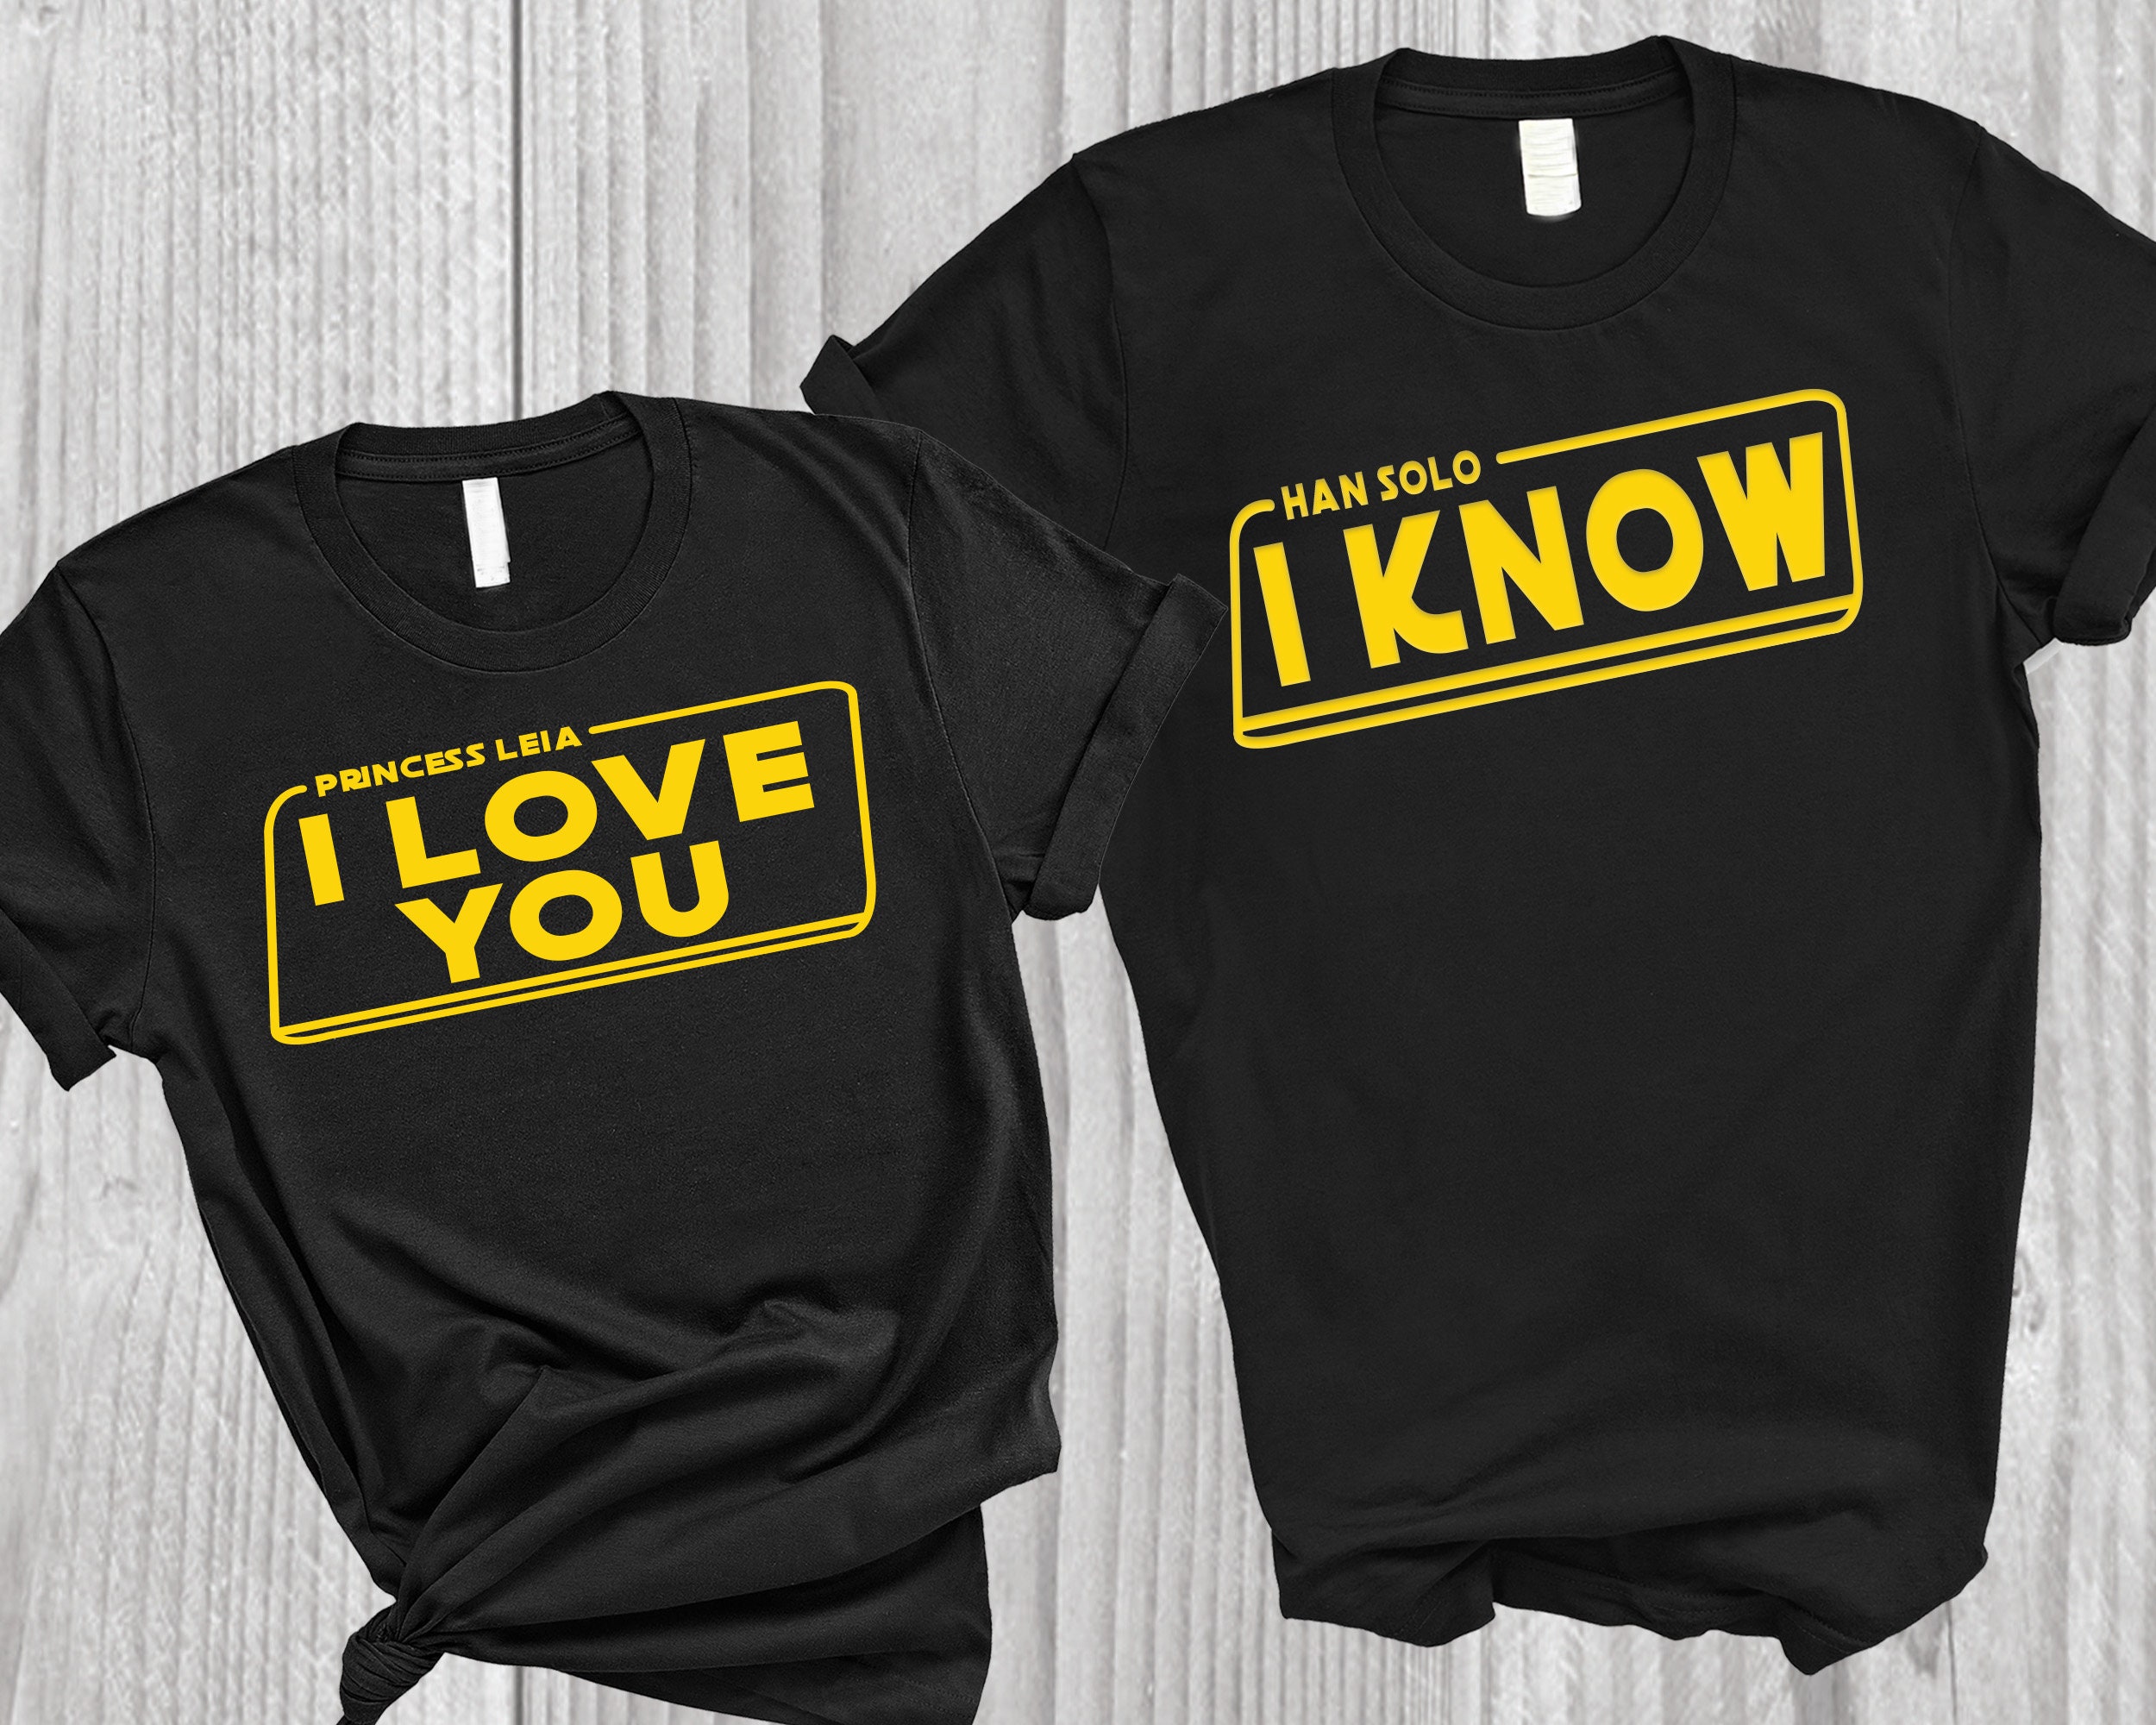 Intens Efternavn fællesskab I Love You I Know Star Wars Disney Couples Unisex Shirts - Etsy